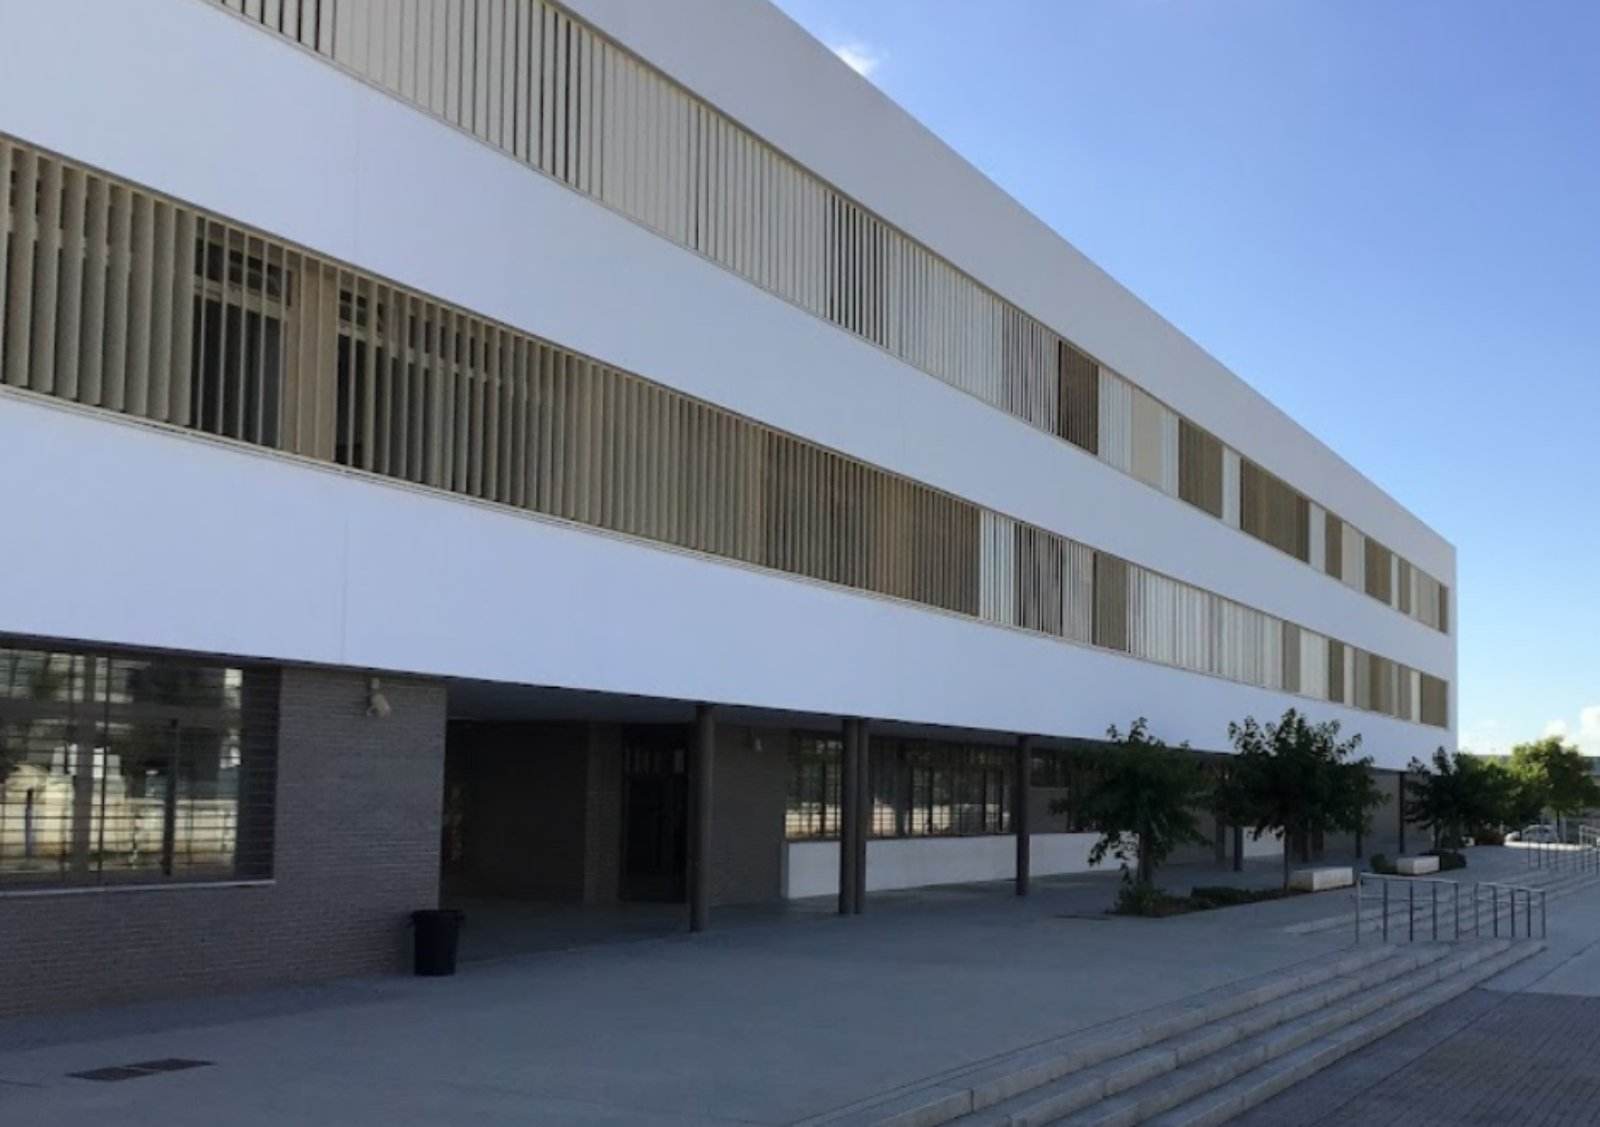 Apunyalament múltiple en un institut de Jerez: un noi de 14 anys fereix greument tres professors i dos alumnes